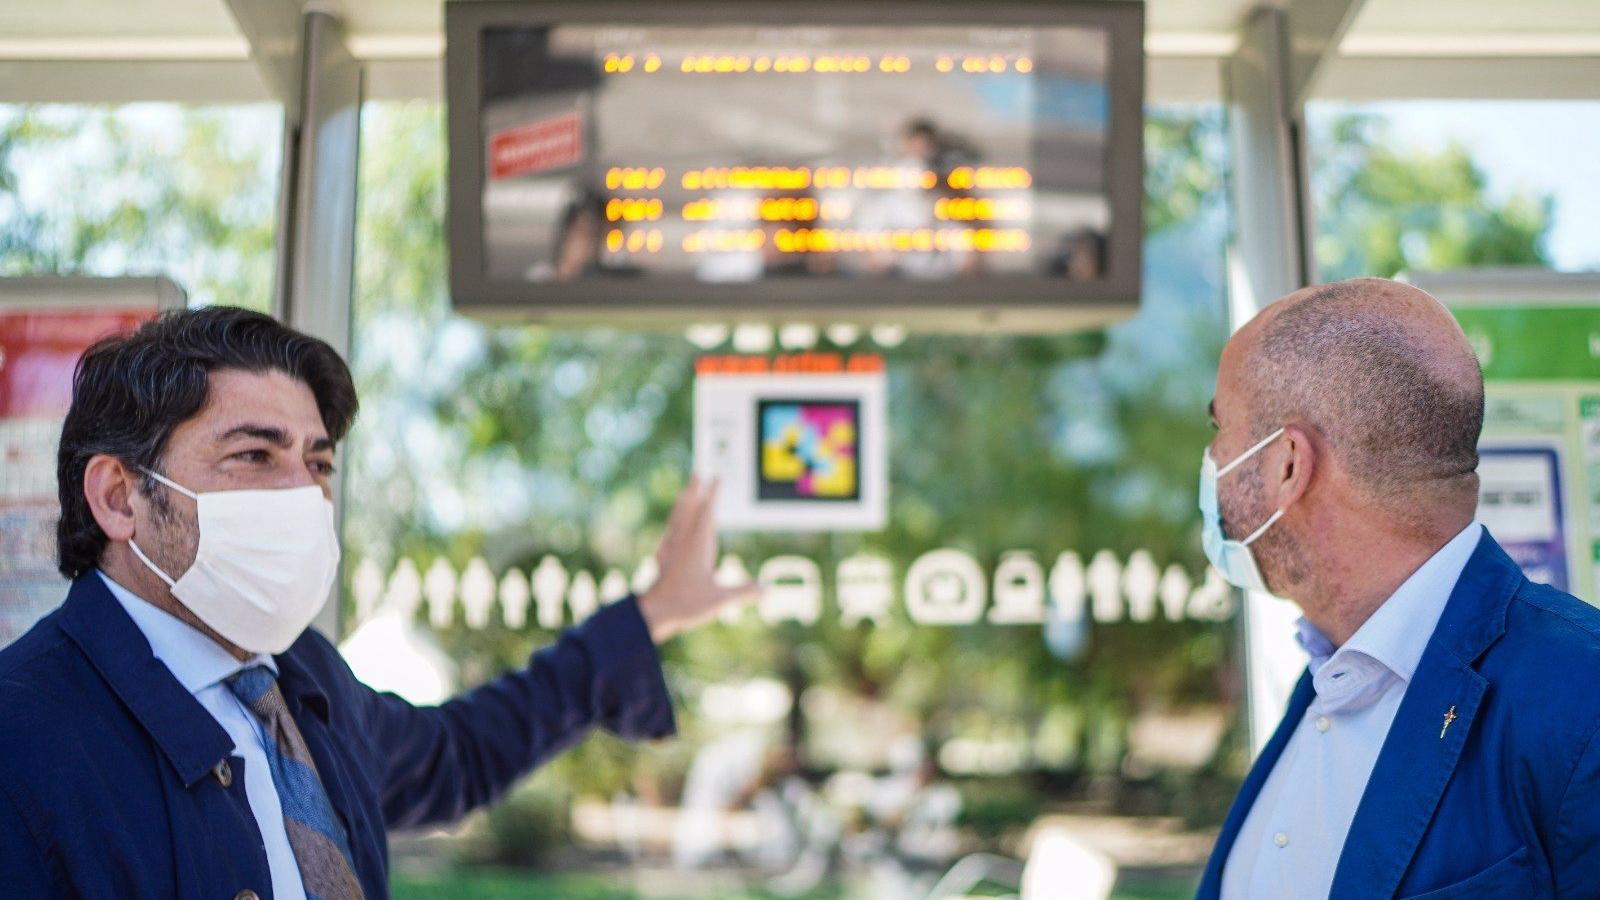 Un nuevo sistema de señalización facilitará a personas con discapacidad visual obtener información en paradas de autobús